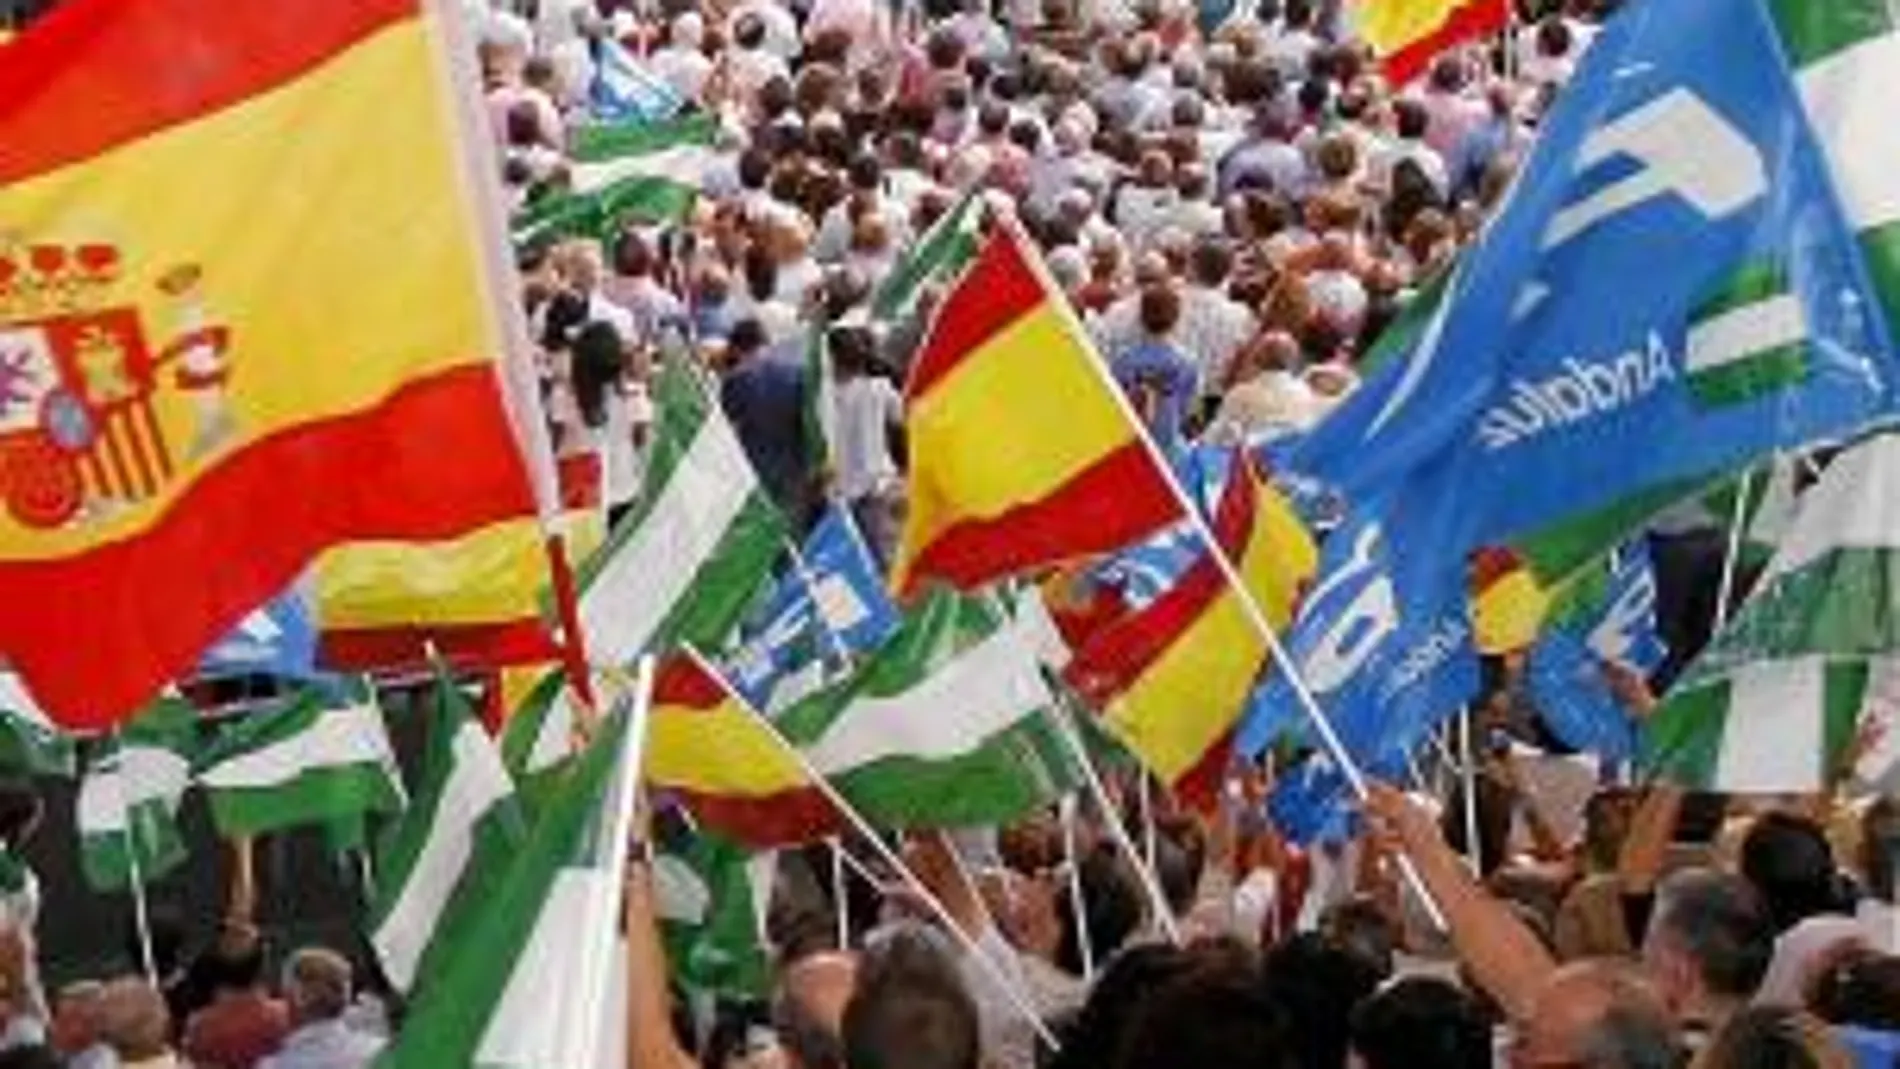 Miles de personas en un acto electoral del PP en Dos Hermanas, Sevilla, en la campaña electoral de 2009 en la que participó Rajoy